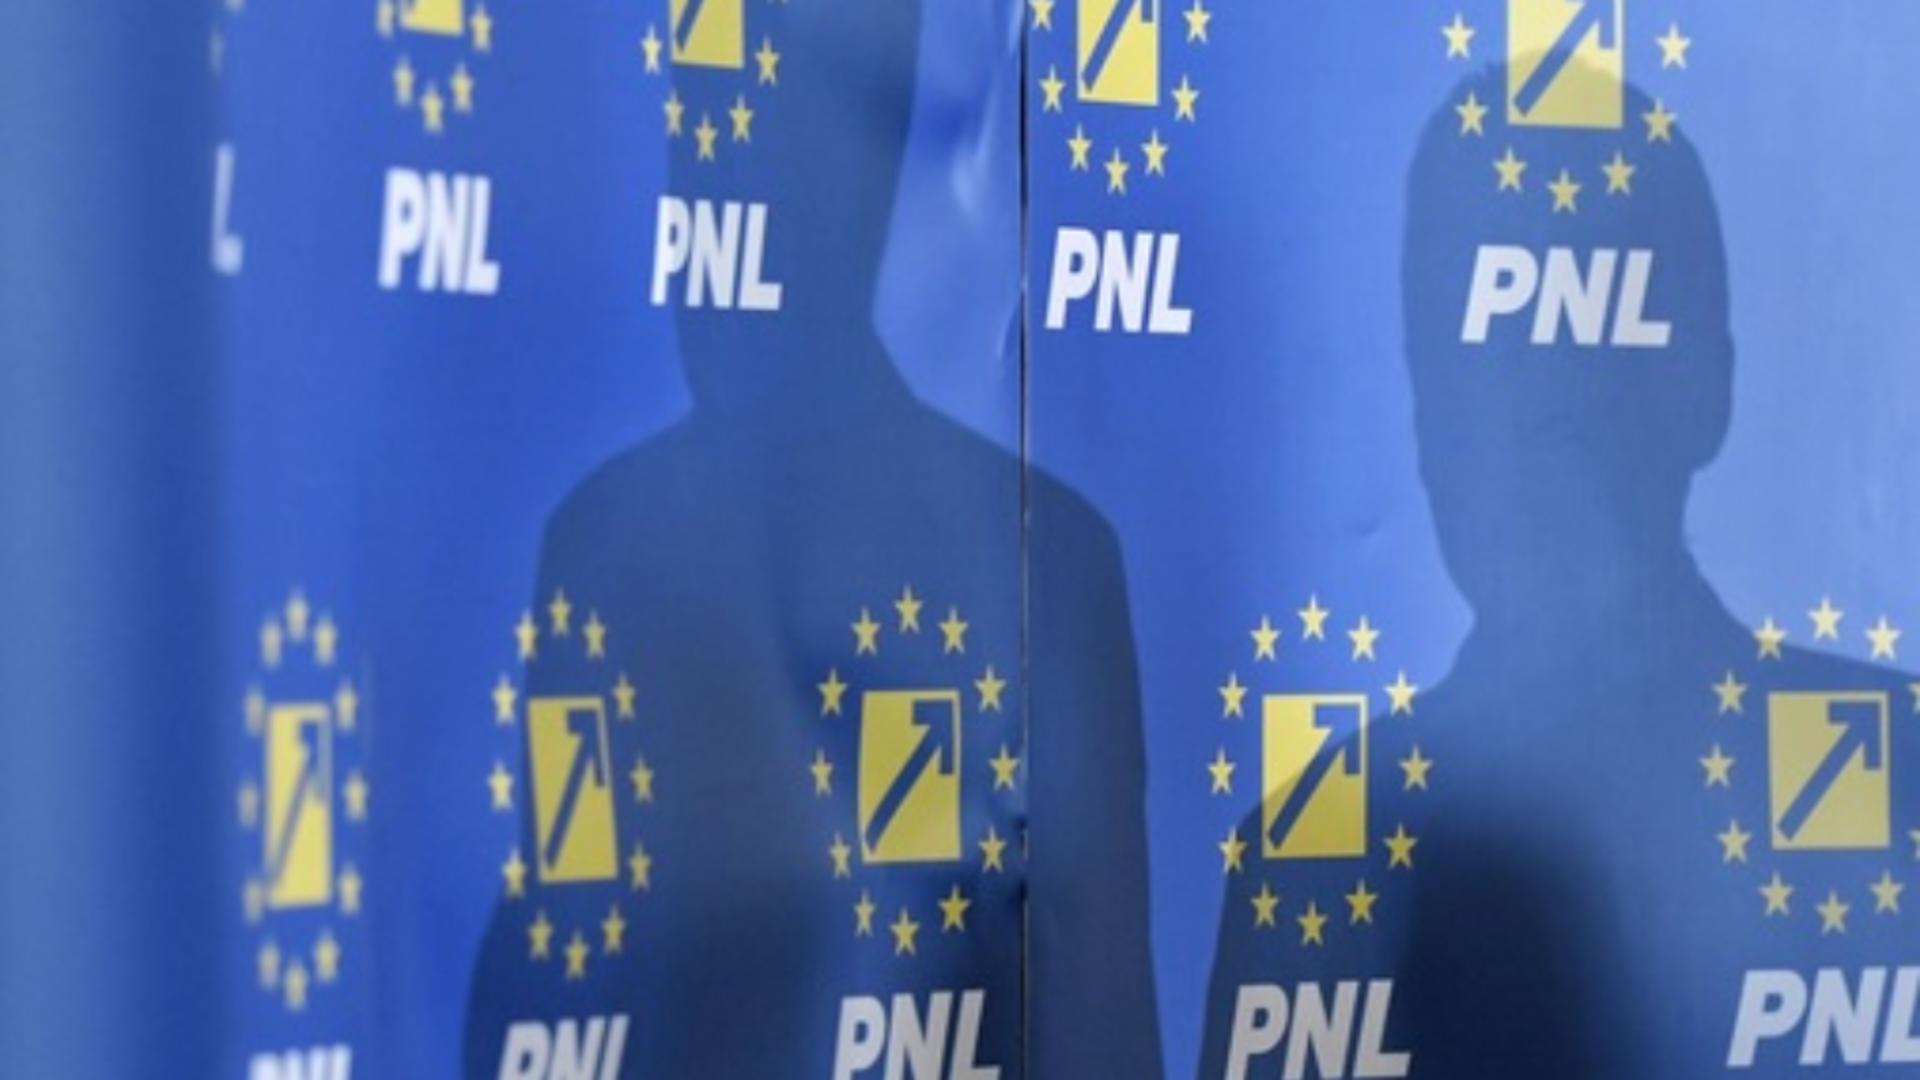 Sondaj Avangarde. PNL, mutare decisivă în opțiunile de vot pentru 2022 - Ce partide preferă românii în Parlament